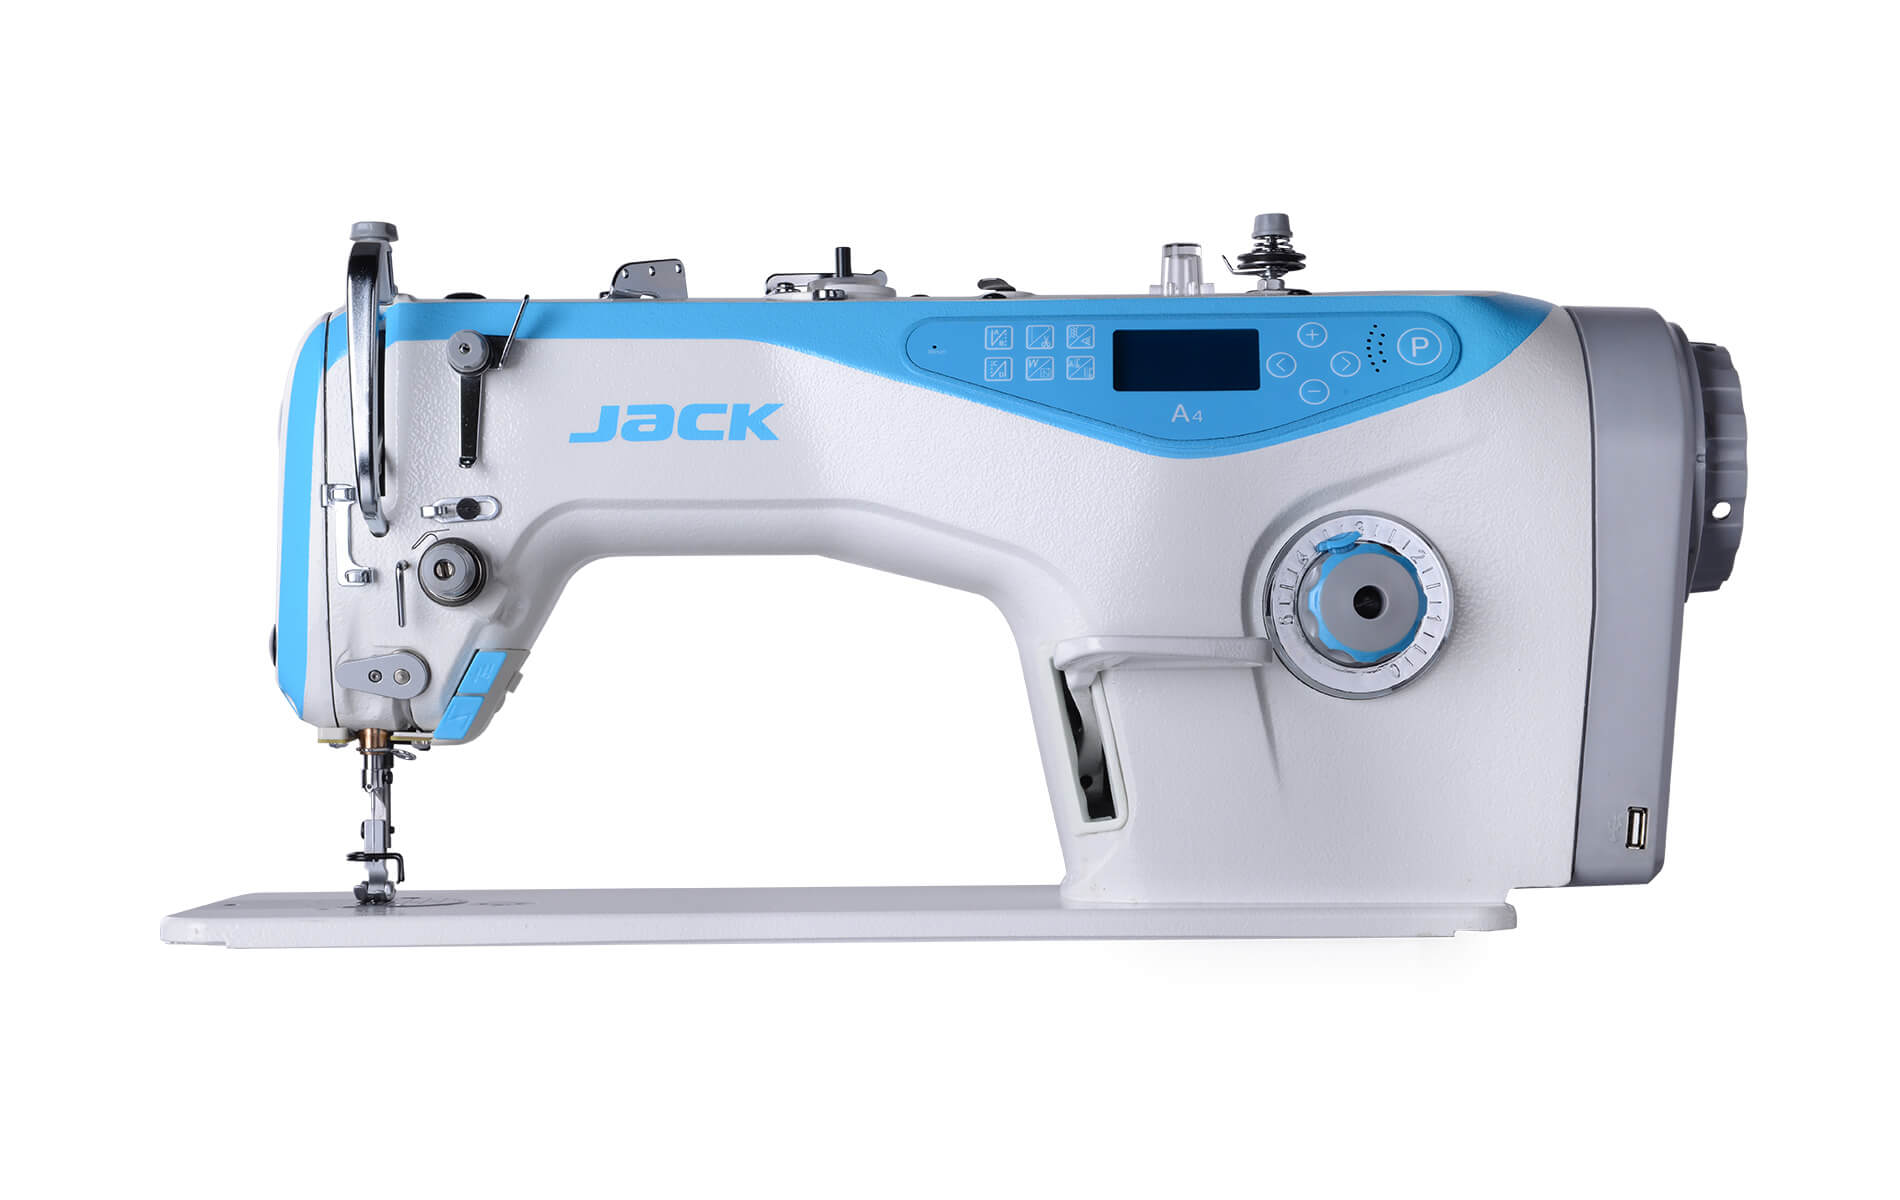 Промышленная прямострочная швейная машина купить. Jack швейная машина a4h Промышленная. Швейная машина Jack JK-a4. Швейная машина Jack h5 cz4. Jack JK-5559g-w.